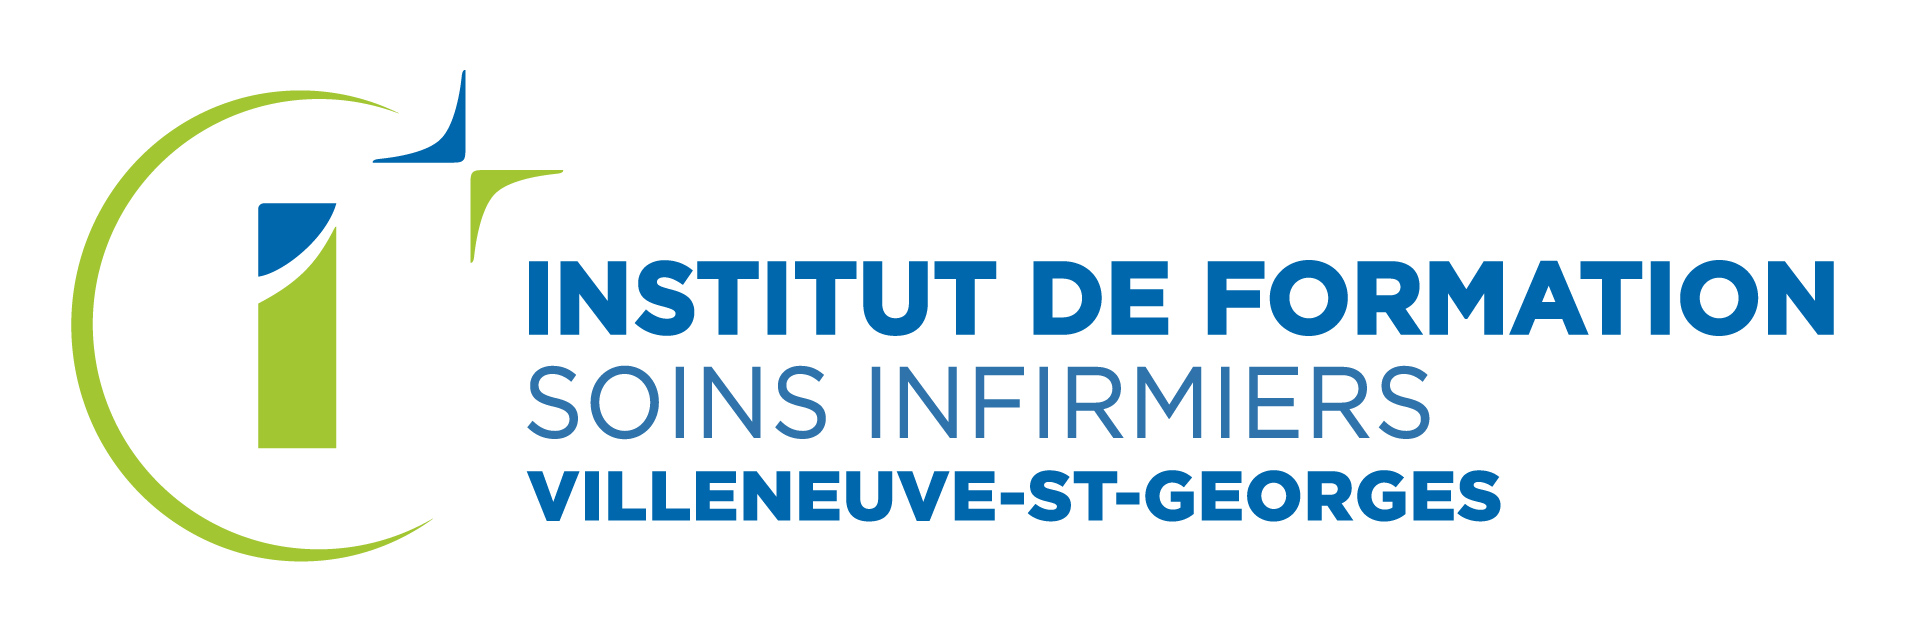 Institut de formation de soins infirmiers Villeneuve Saint Georges